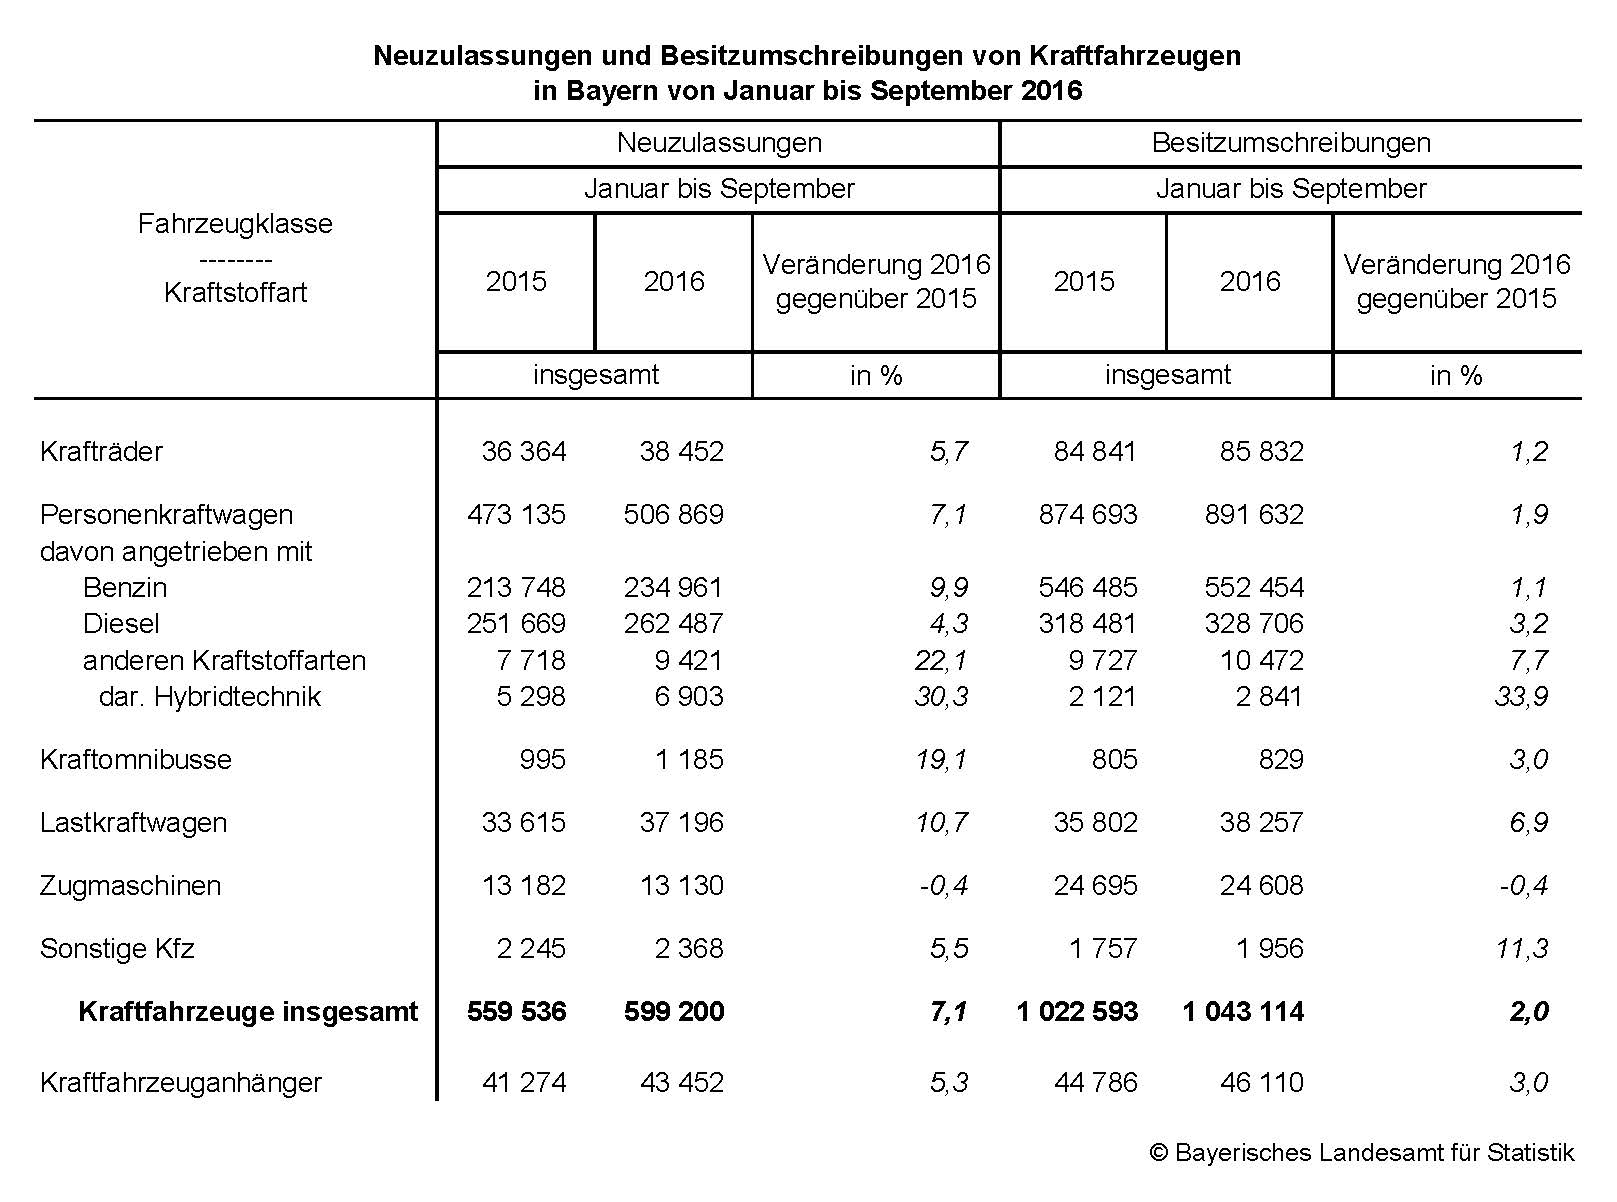 Neuzulassungen und Besitzumschreibungen von Kraftfahrzeugen in Bayern von Januar bis September 2016